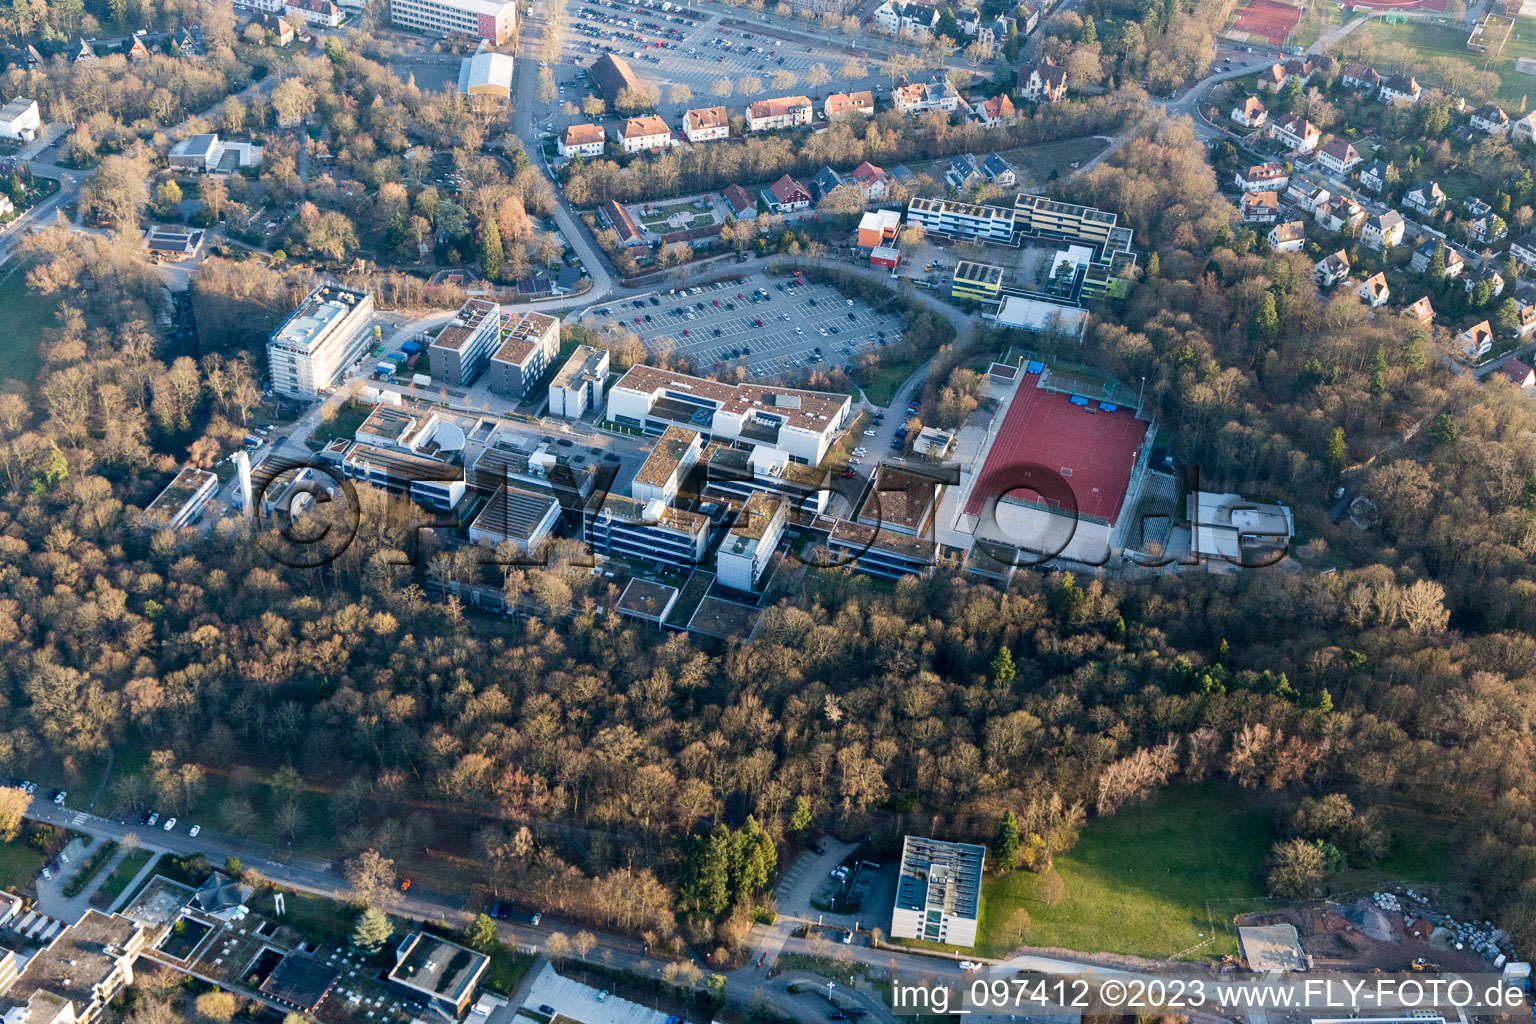 Landau in der Pfalz im Bundesland Rheinland-Pfalz, Deutschland aus der Drohnenperspektive